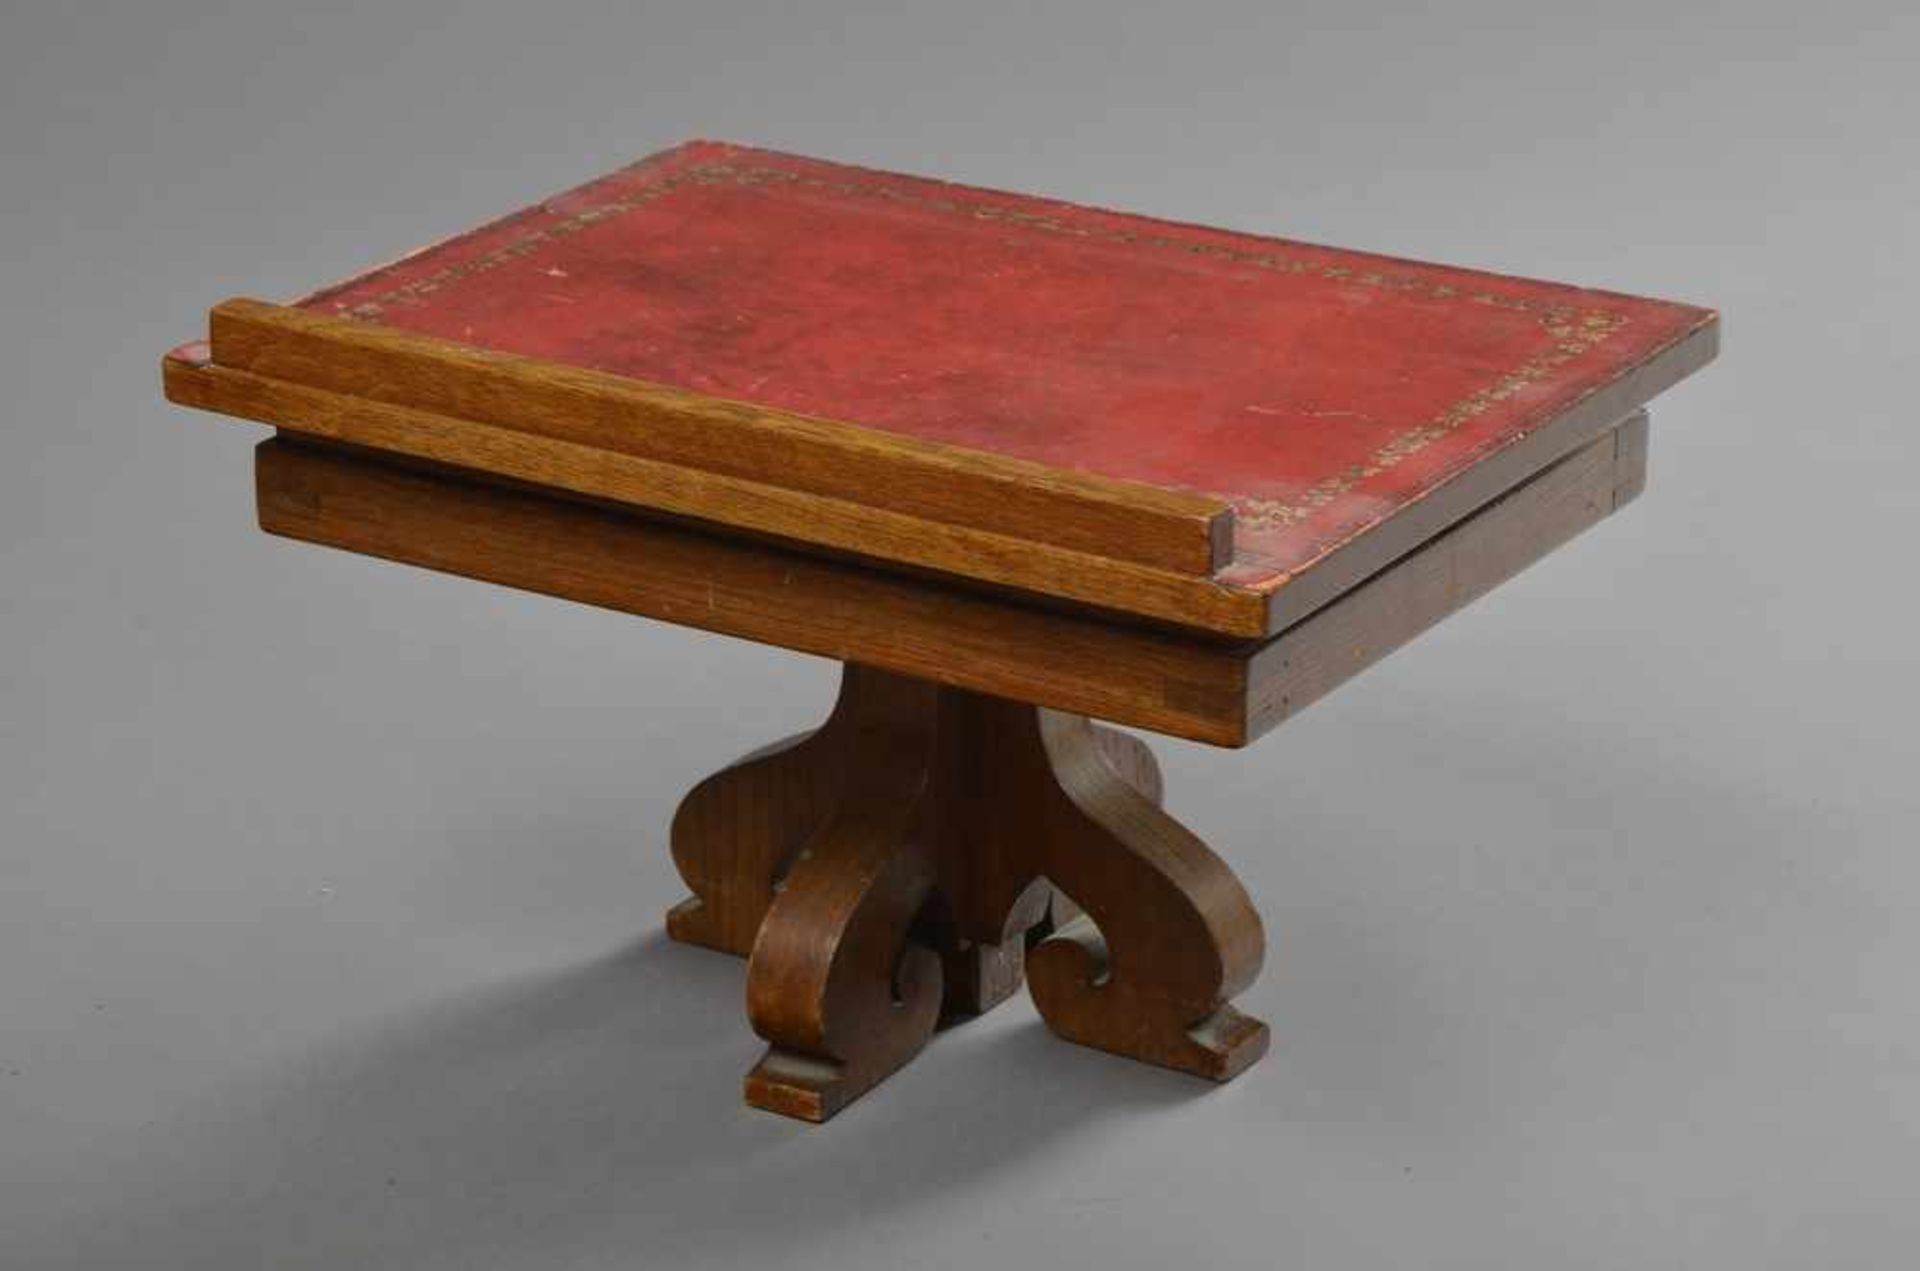 1 Eichen Buchpult mit rotem Leder, geprägt, 25-45cmx40x30cm - Bild 2 aus 2